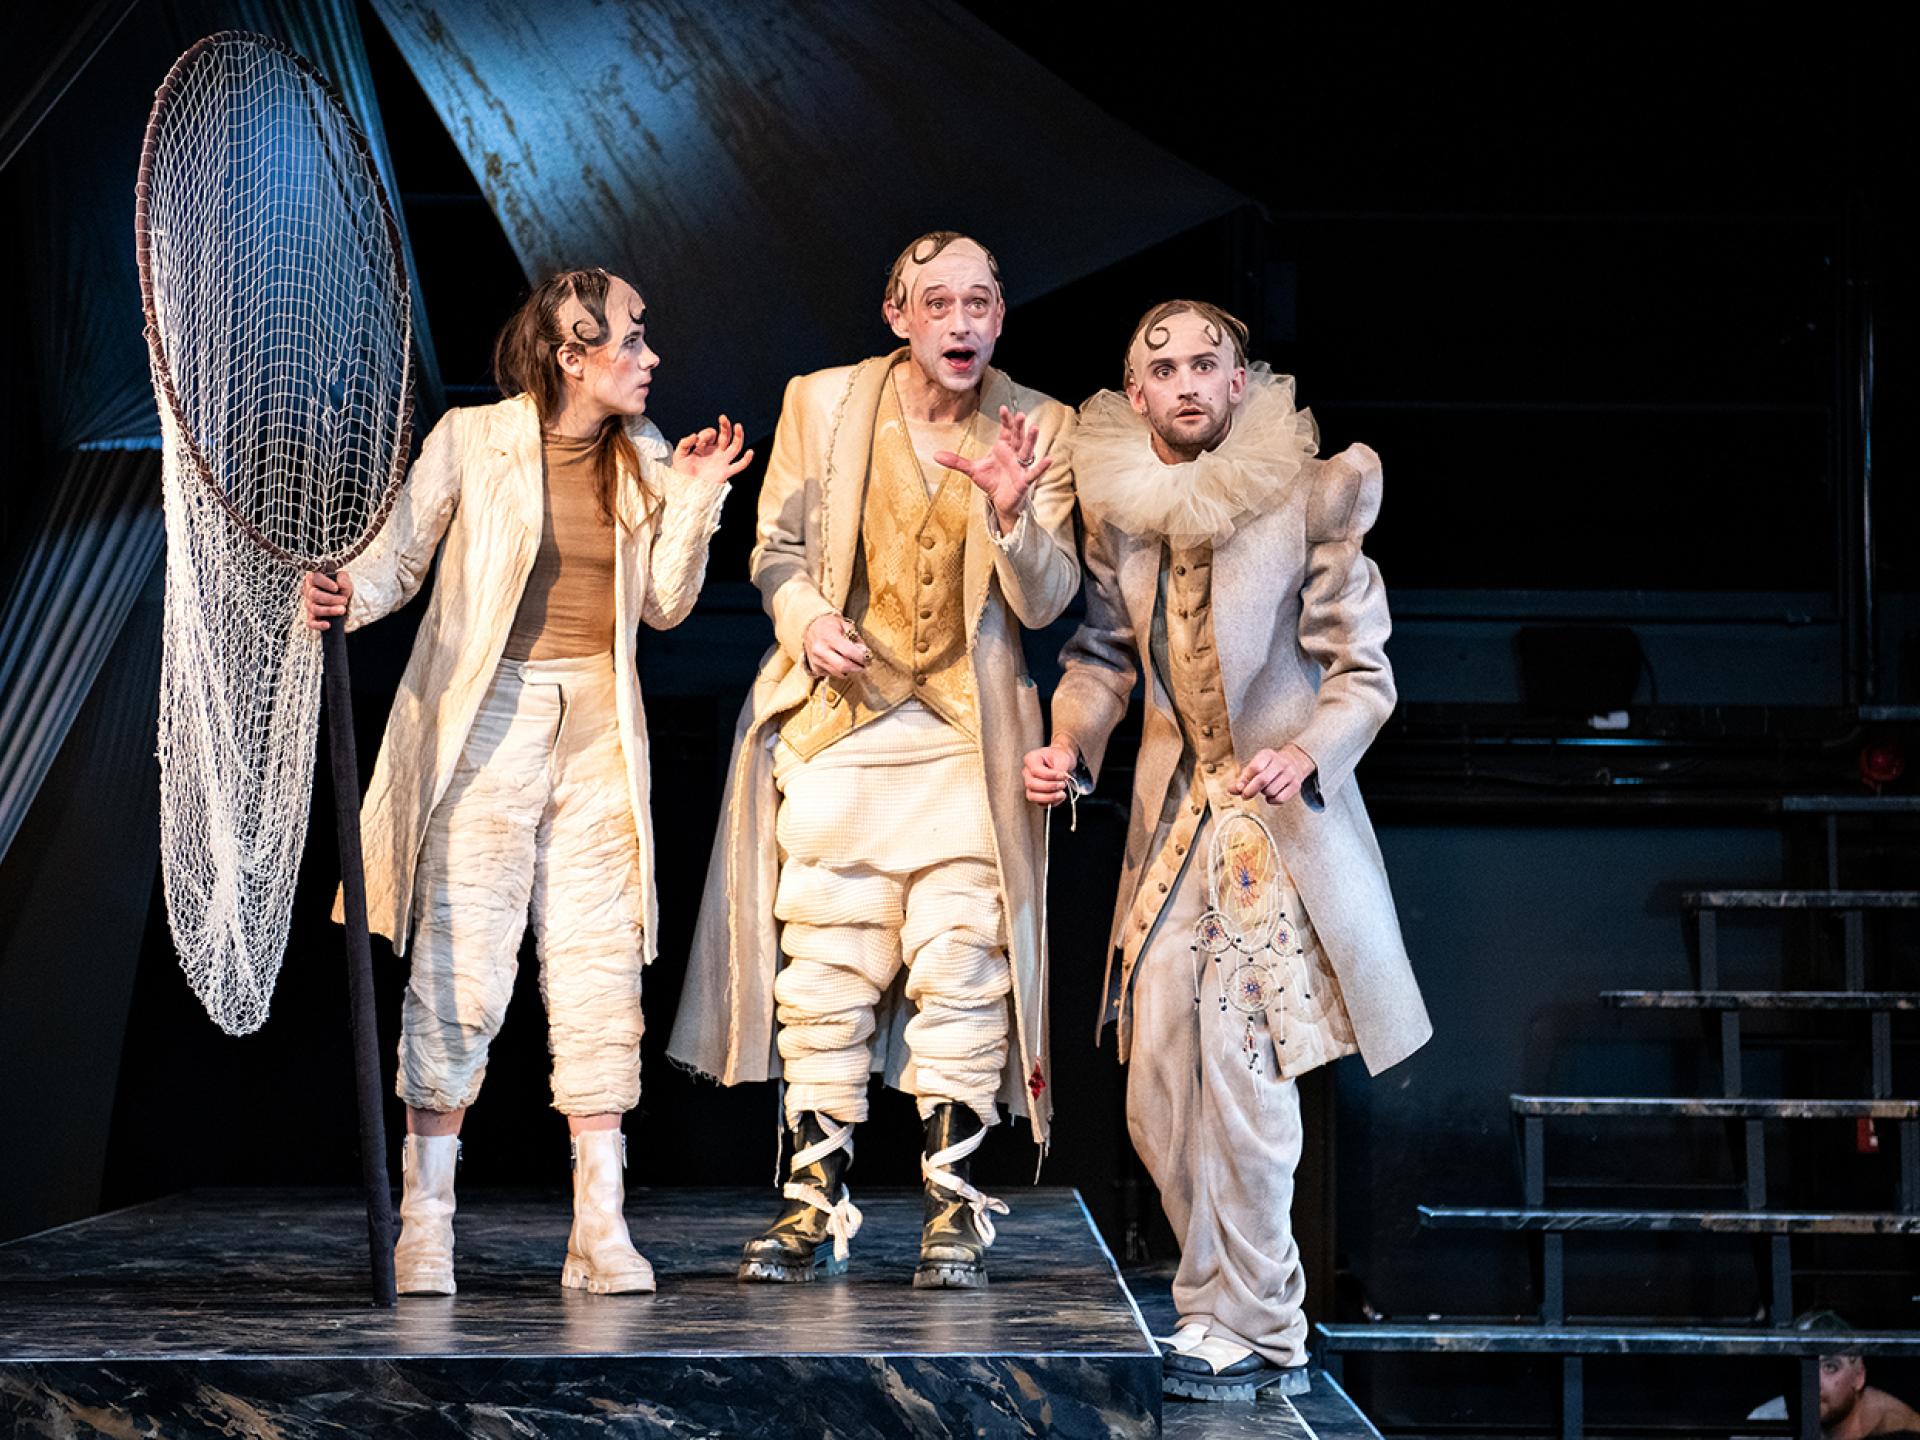 Olearius (gespielt von Esra Schreier) mit einem großen Köcher steht auf der Bühne mit den Figuren Kircher und Quast in der Inszenierung von "Tyll" am Theater Heidelberg im Dezember 2021.